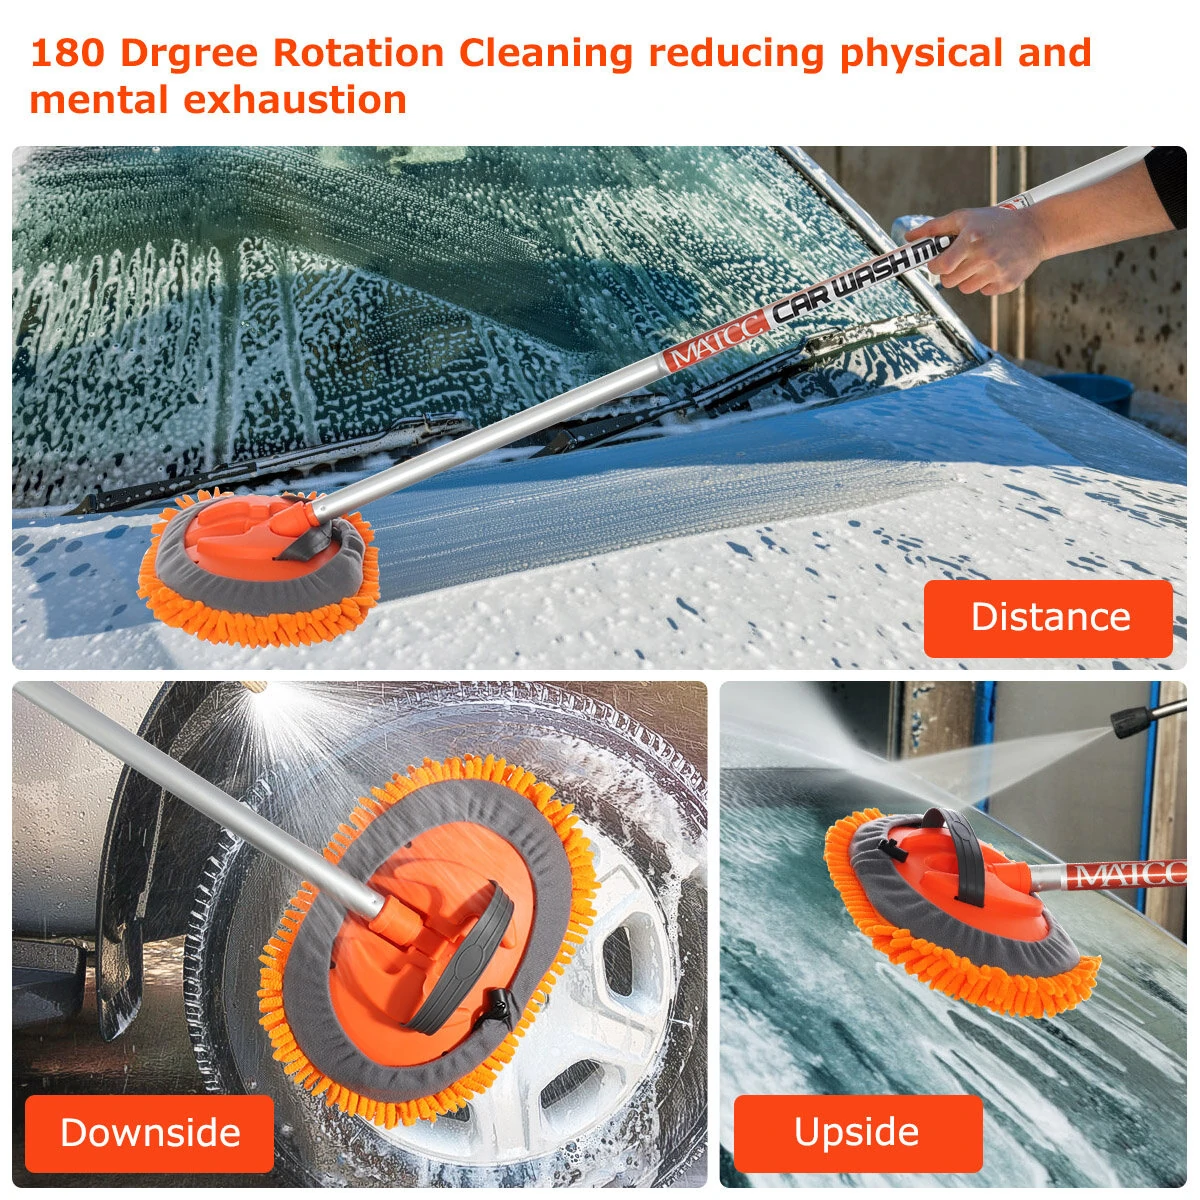 MATCC esfregão para lavar carros Ferramenta de limpeza ajustável Escova removível